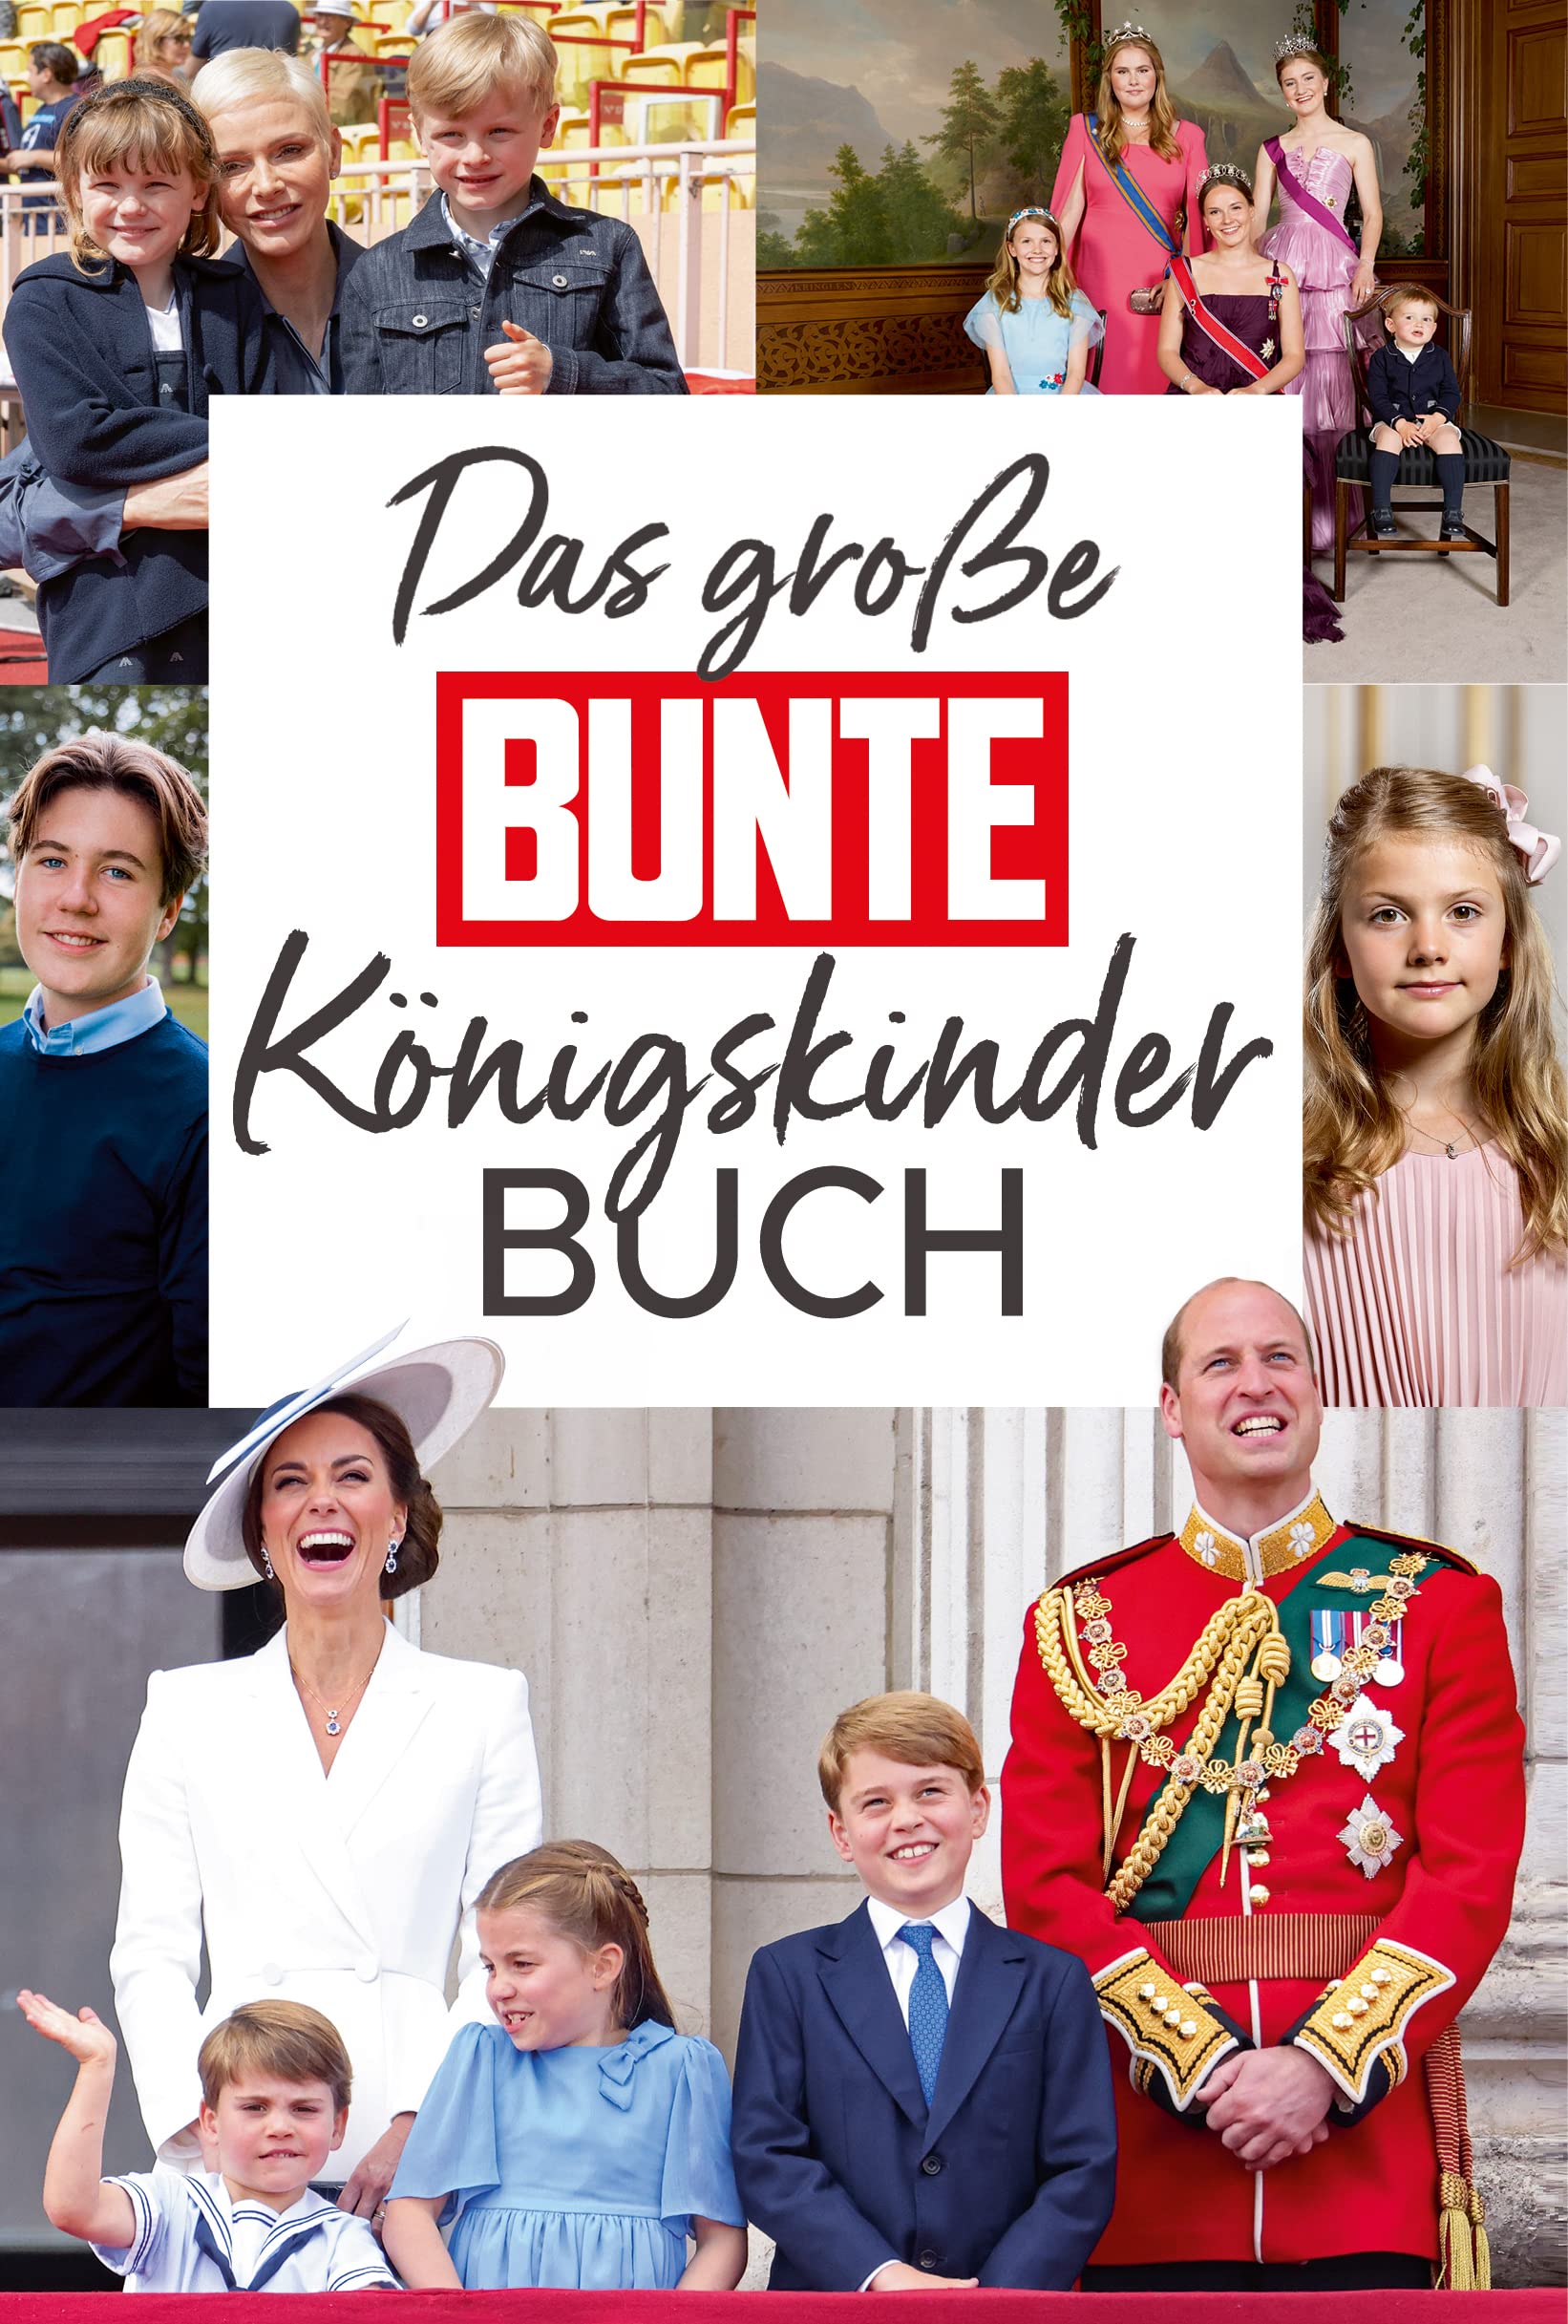 BUNTE: Das große BUNTE-Königskinder-Buch